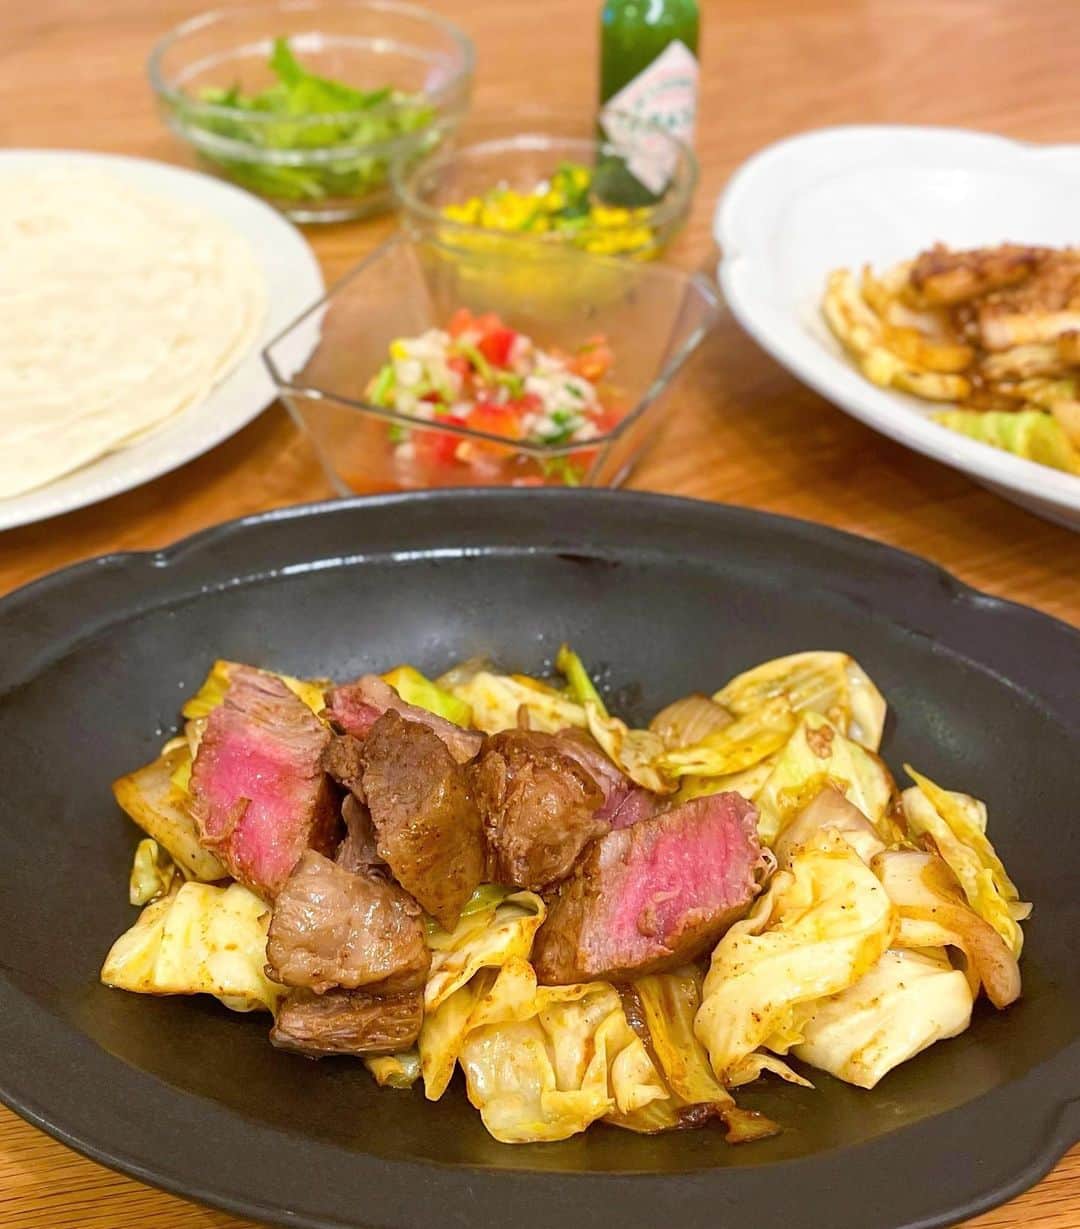 伊賀るり子のインスタグラム：「🇲🇽メキシカンナイト🌮 今日はメキシコ料理「ファヒータ」をつくりました。 野菜が沢山食べれて、スパイスや香味野菜を沢山使うため塩分も控えめ。 パンチのある美味しさでありながらも意外とヘルシーなメキシコ料理は夫の大好物なんです😊 今日は牛肉と豚肉を使って2種類のファヒータを作り、サルサソースやとうもろこしのパクチーサラダなどと一緒にトルティーヤで包んで食べました。 「やっぱり美味しいものって幸せになれるねー！」と夫も大喜びで食べてくれて、こちらも嬉しい気持ちになりました✨  #おうちメキシカン #メキシコ料理 #ファヒータ #パクチー料理 #パクチーレシピ #キャベツレシピ #玉ねぎレシピ #ダイエットレシピ #低糖質レシピ #糖質制限レシピ #簡単レシピ」